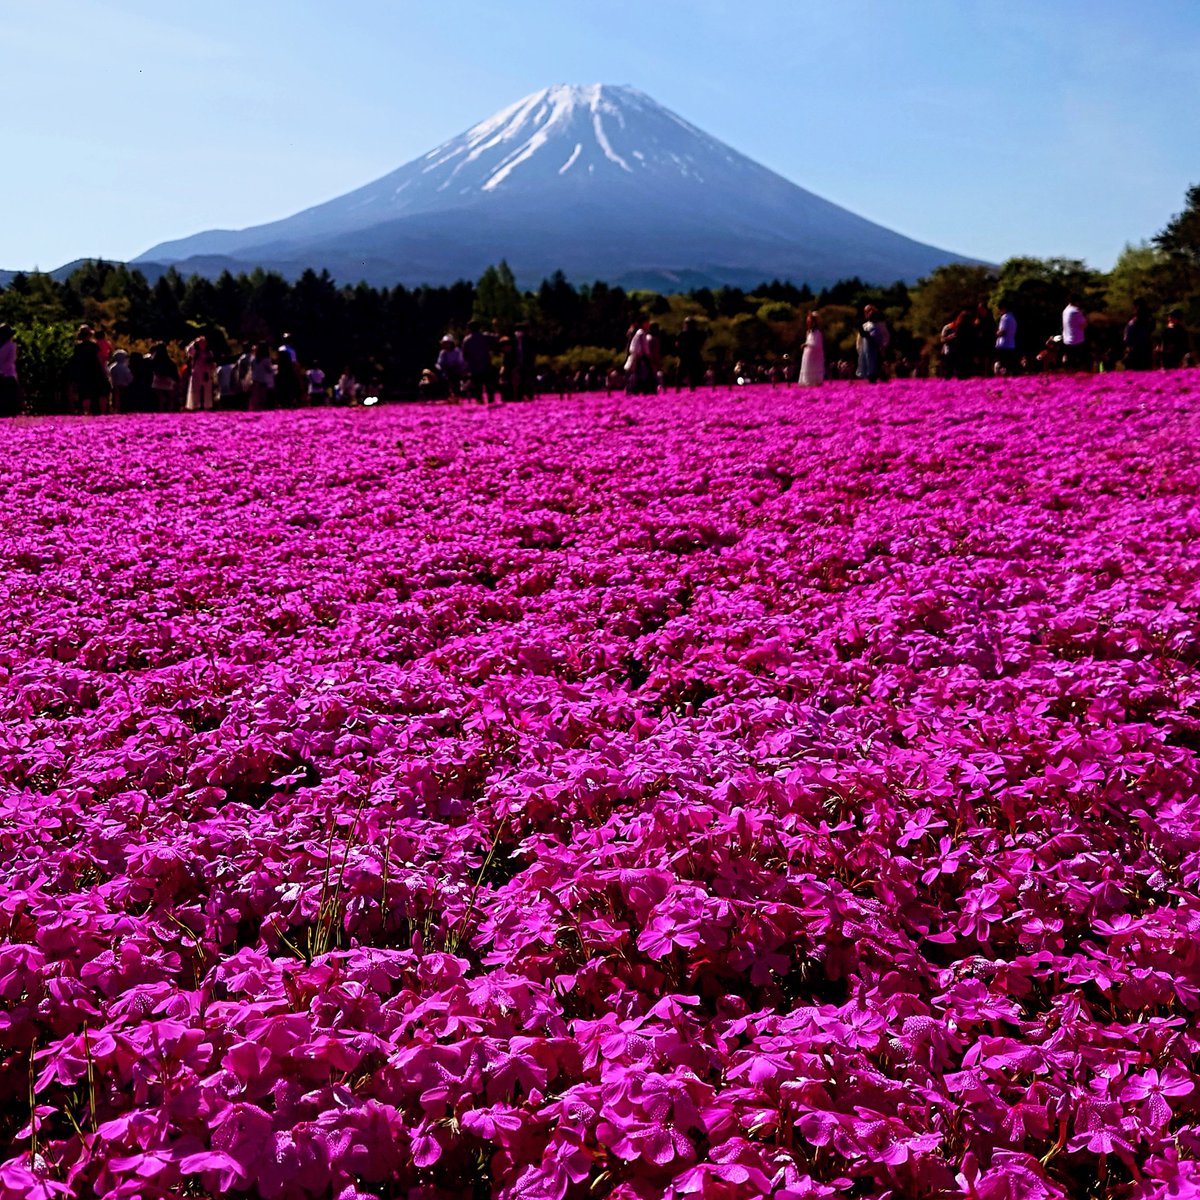 昨日は #富士芝ざくらまつり に行ってきました。ピンクを中心として色とりどりの芝ざくらは見頃でした。快晴だったので、空のブルーとのコントラストが綺麗でした。
富士山を見ると、先日開催された @MtFUJI100 （#UTMF）を思い浮かべてしまうのは仕事柄ですかね。